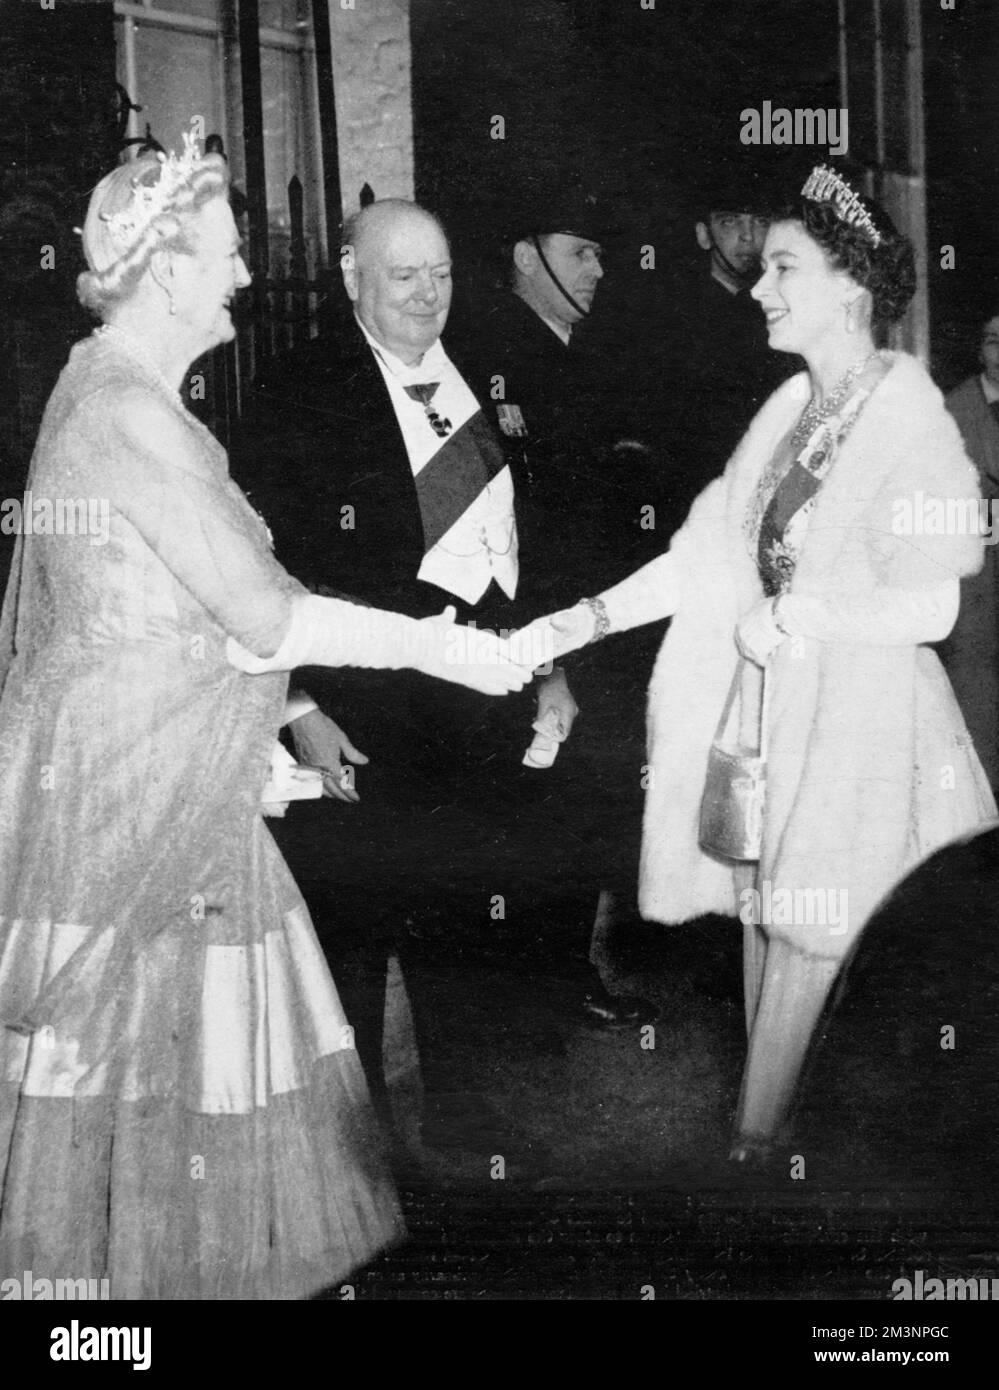 La regina arriva a Downing Street e viene salutata al numero 10 da Sir Winston e Lady Churchill la notte prima del suo ritiro dall'ufficio. Una cinquantina di ospiti illustri sono stati invitati alla cena che segna la fine del mandato di Sir Winston come primo Ministro. Data: 1955 Foto Stock